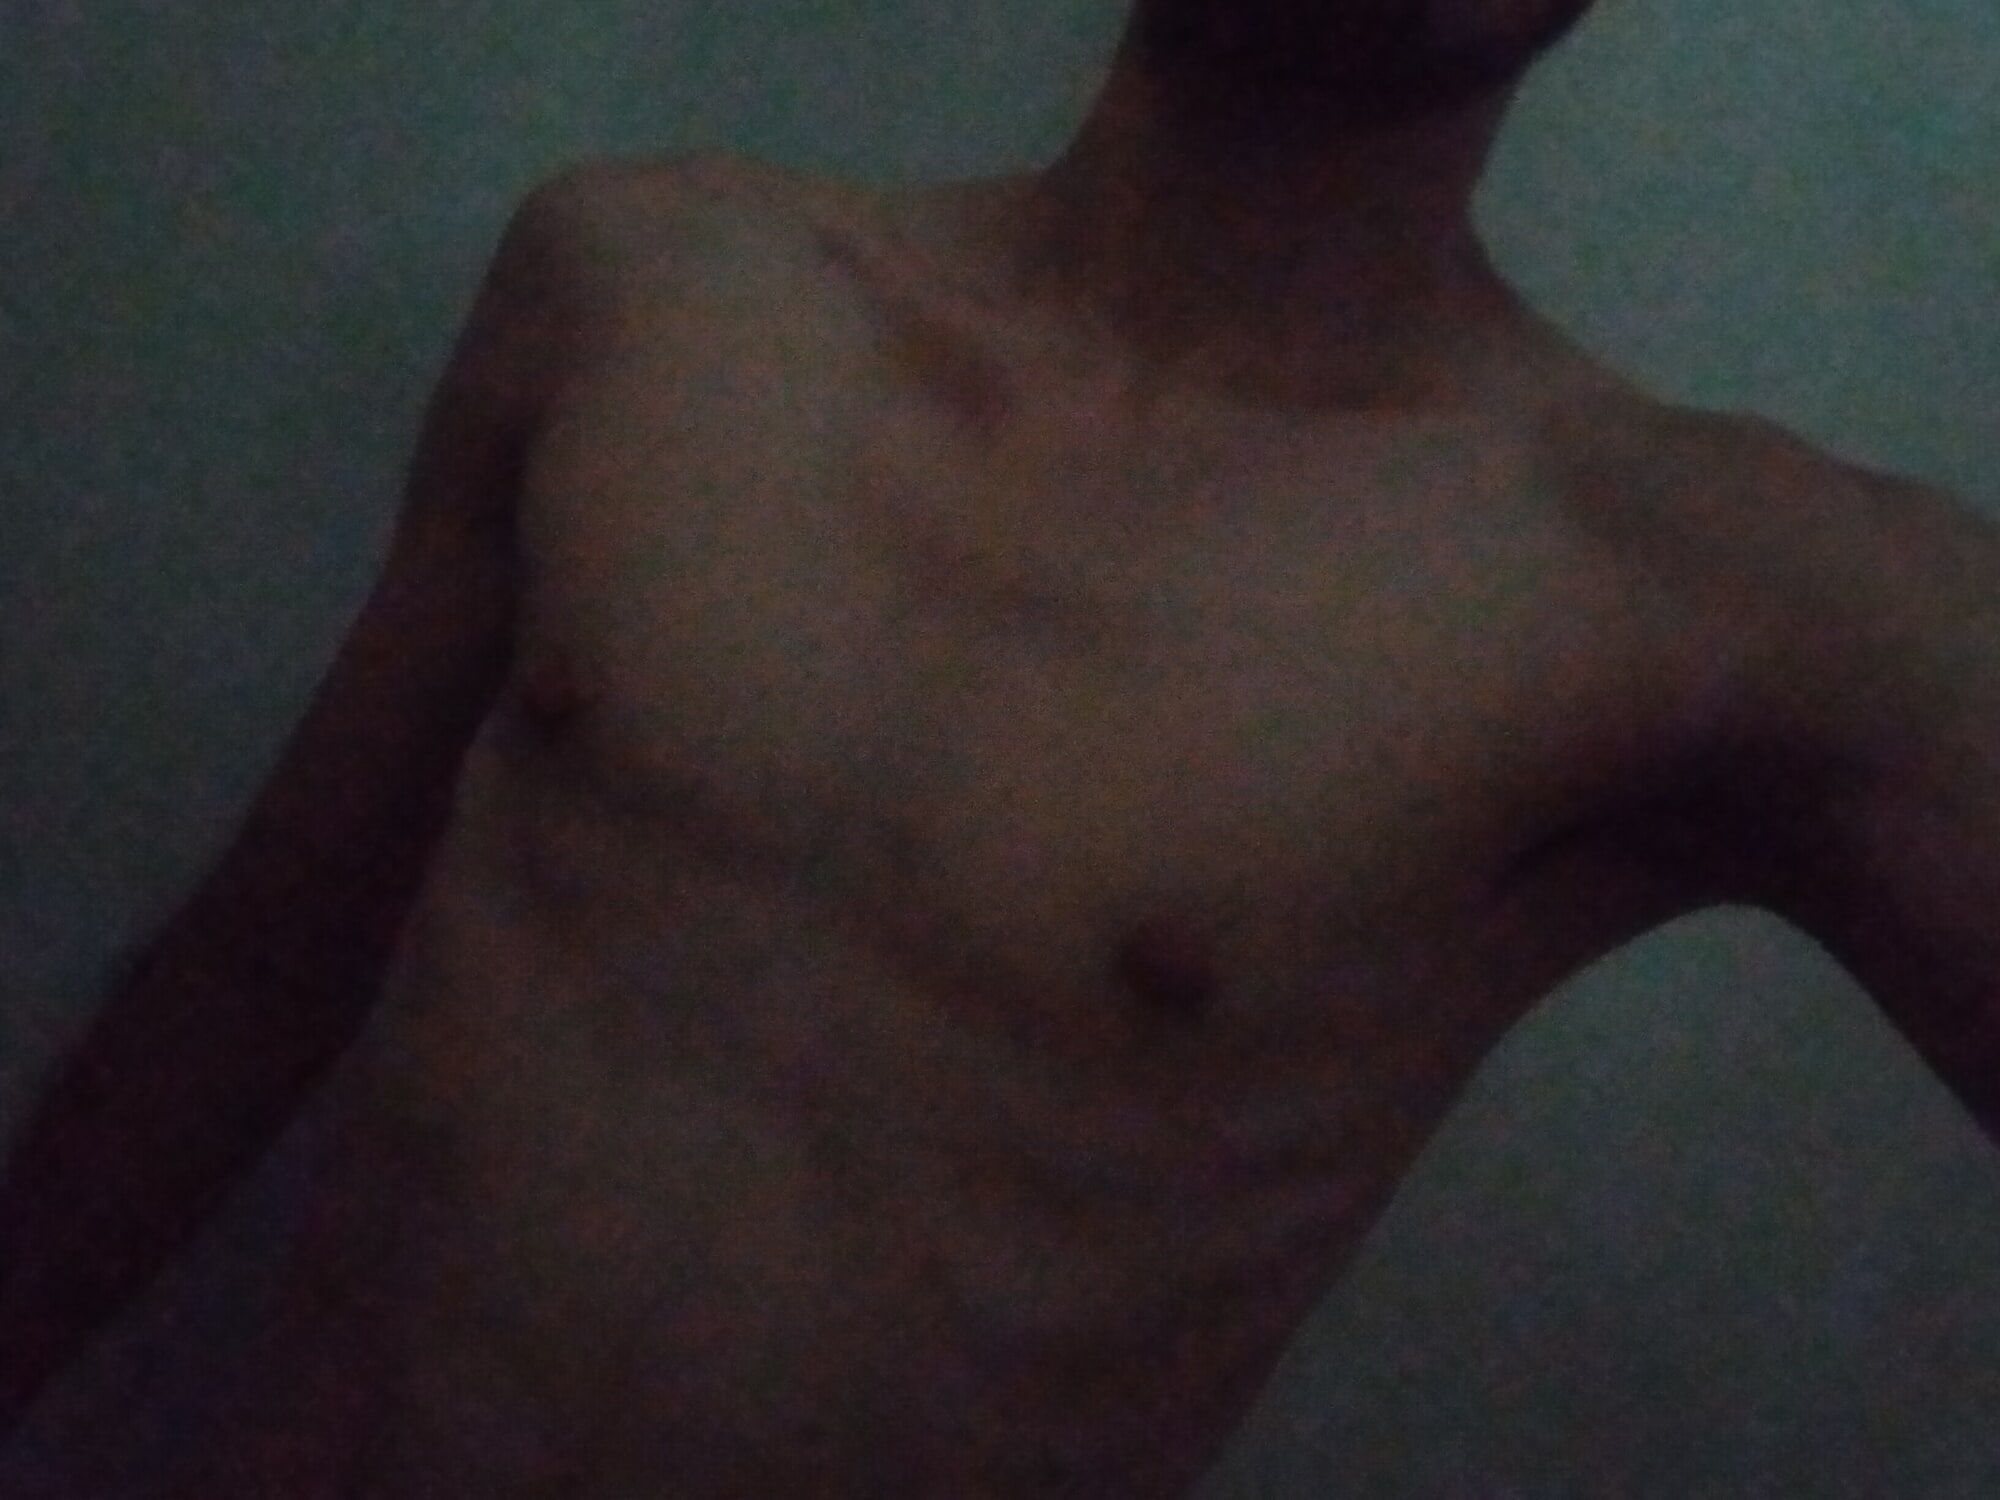 skinny guy takes photo in his shower #2